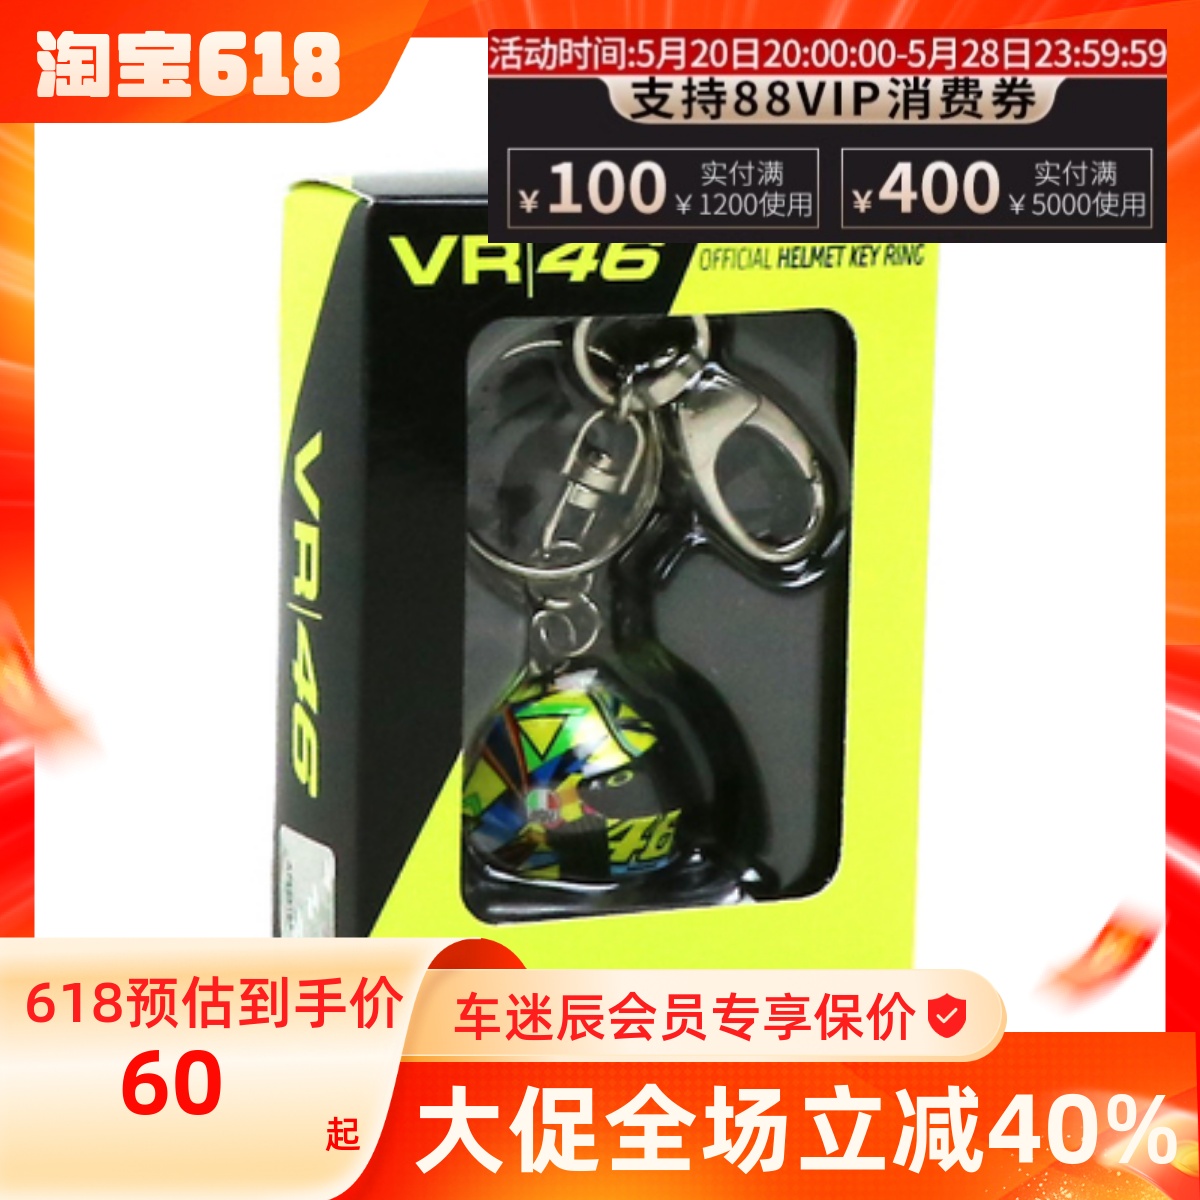 正品VR46 罗老板授权車迷辰 摩托车钥匙圈钥匙扣手机头盔限量